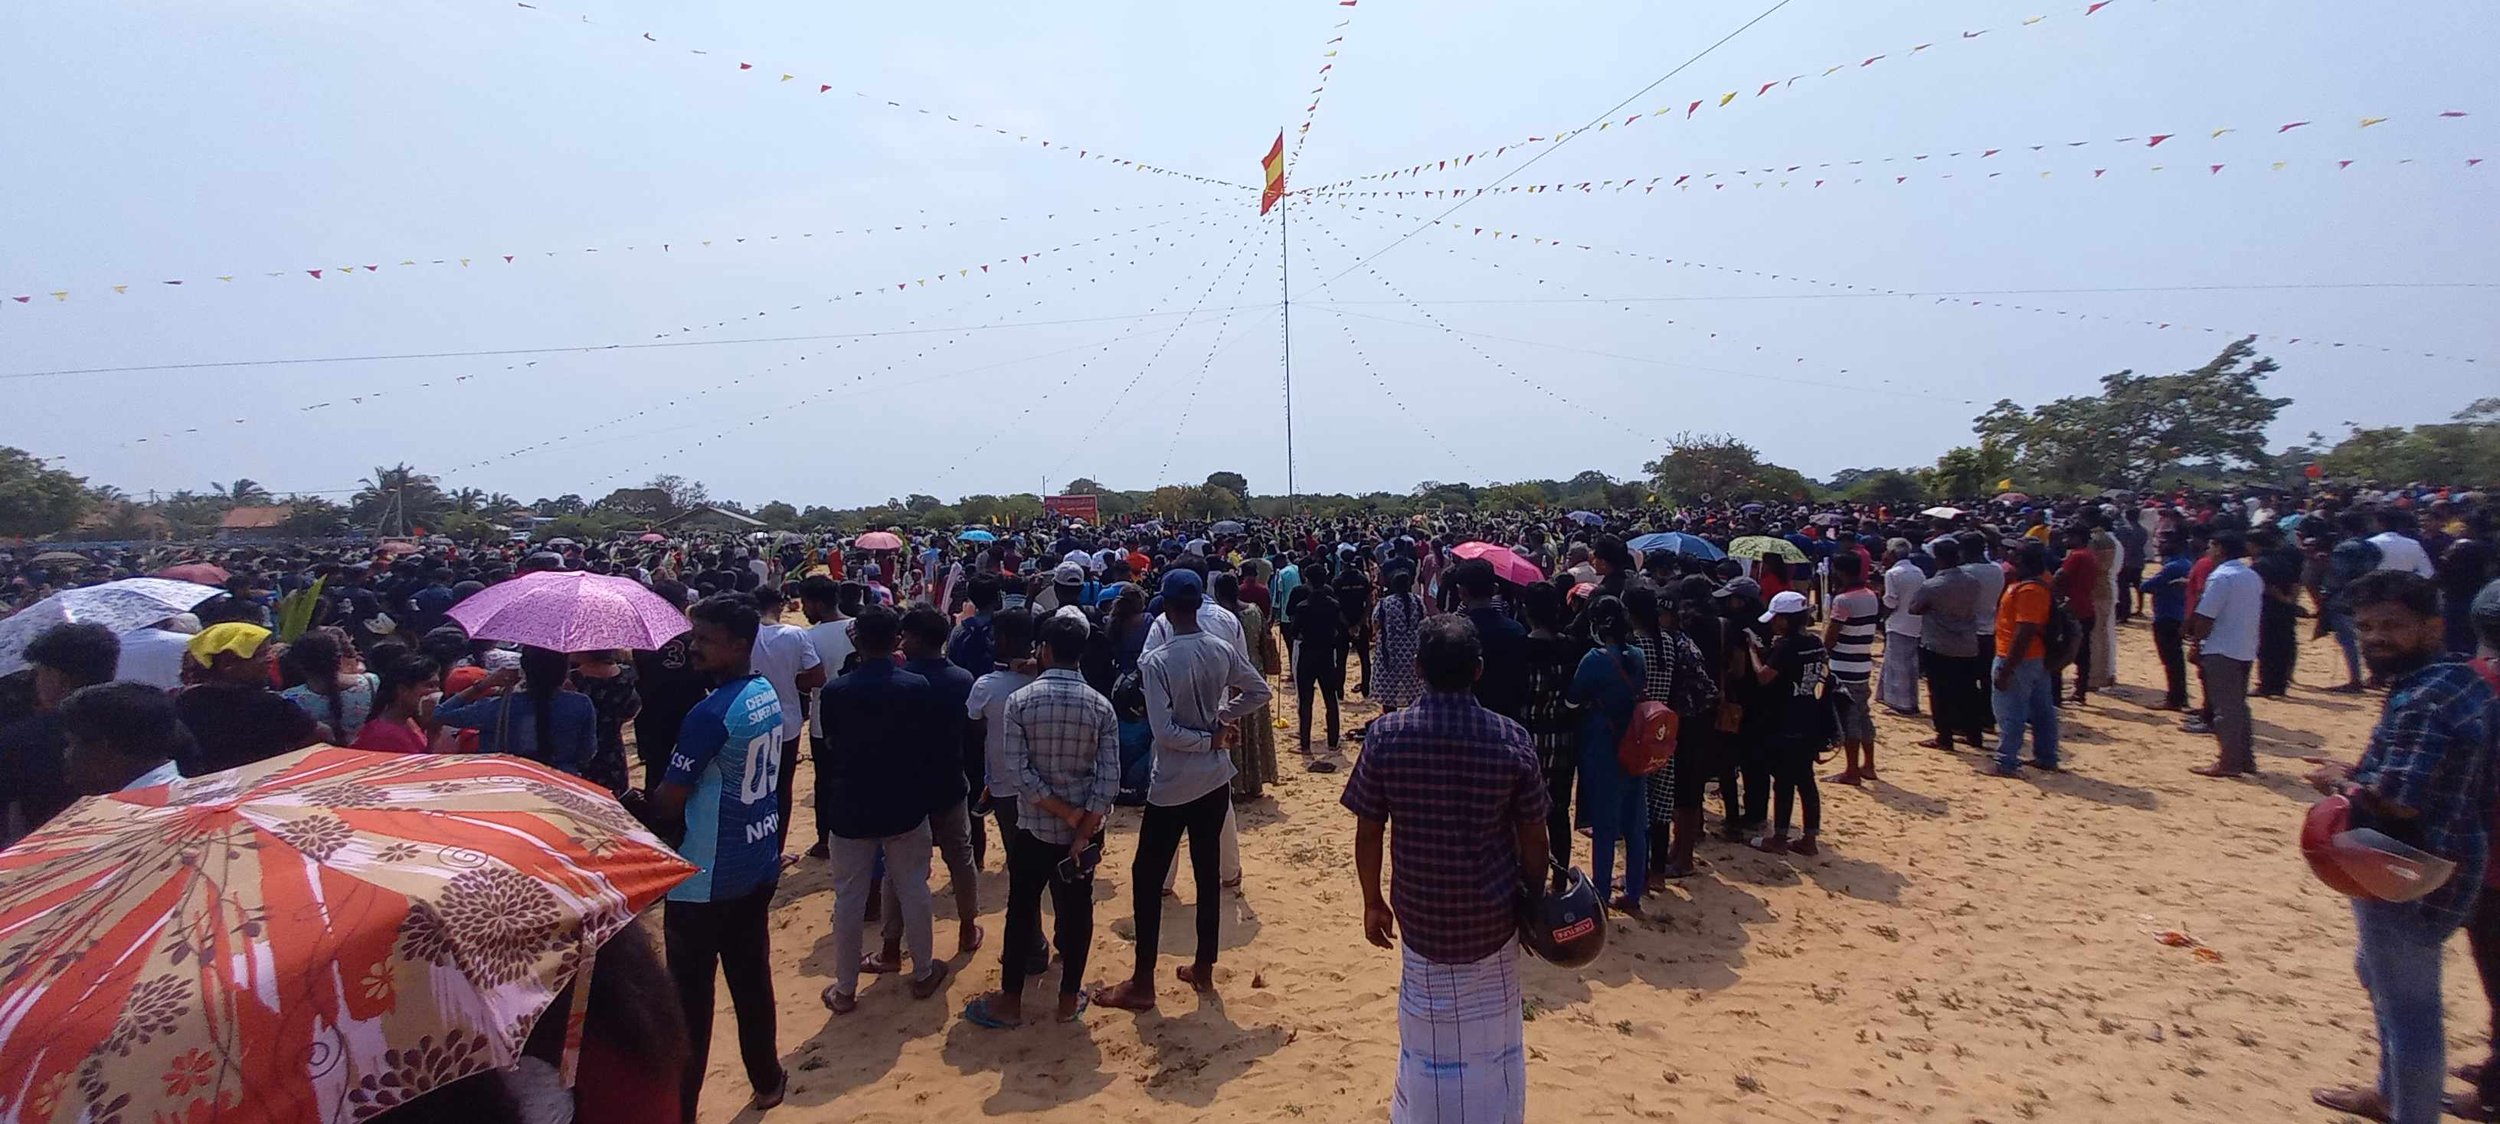 Mullivaikal Memorial Day, Jaffna